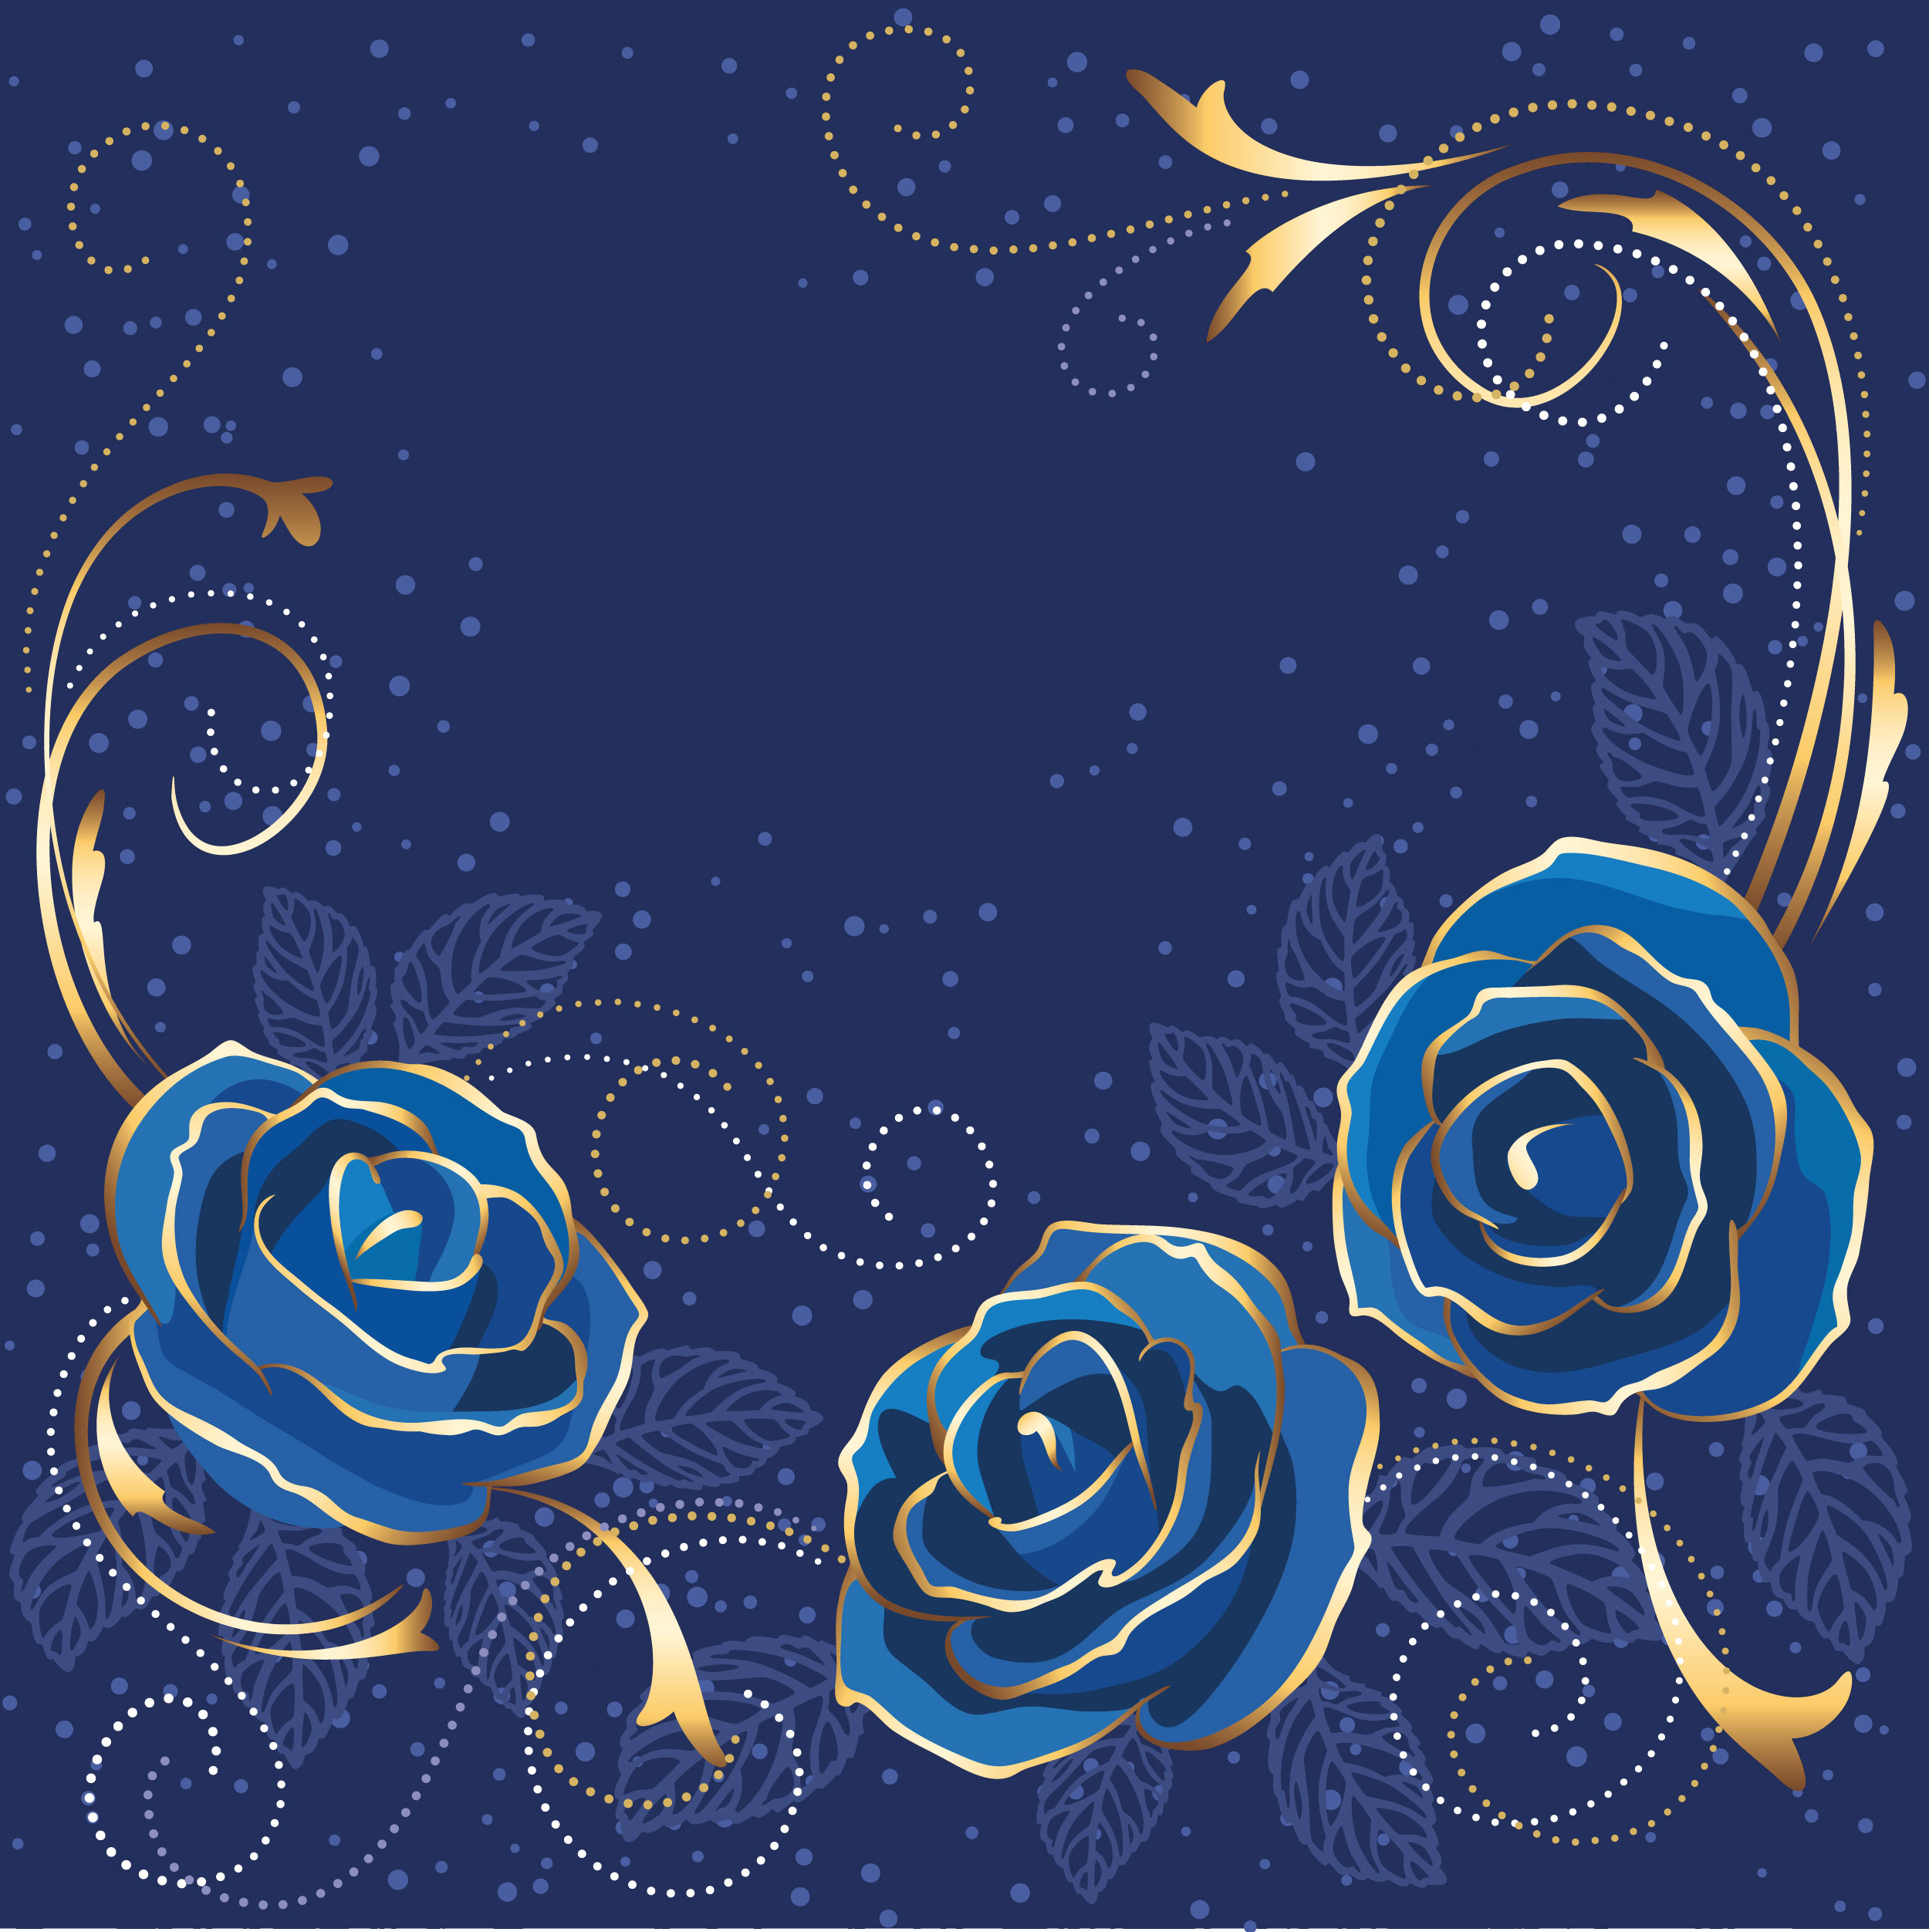 花のイラスト フリー素材 壁紙 背景no 285 青いバラ 金色の葉